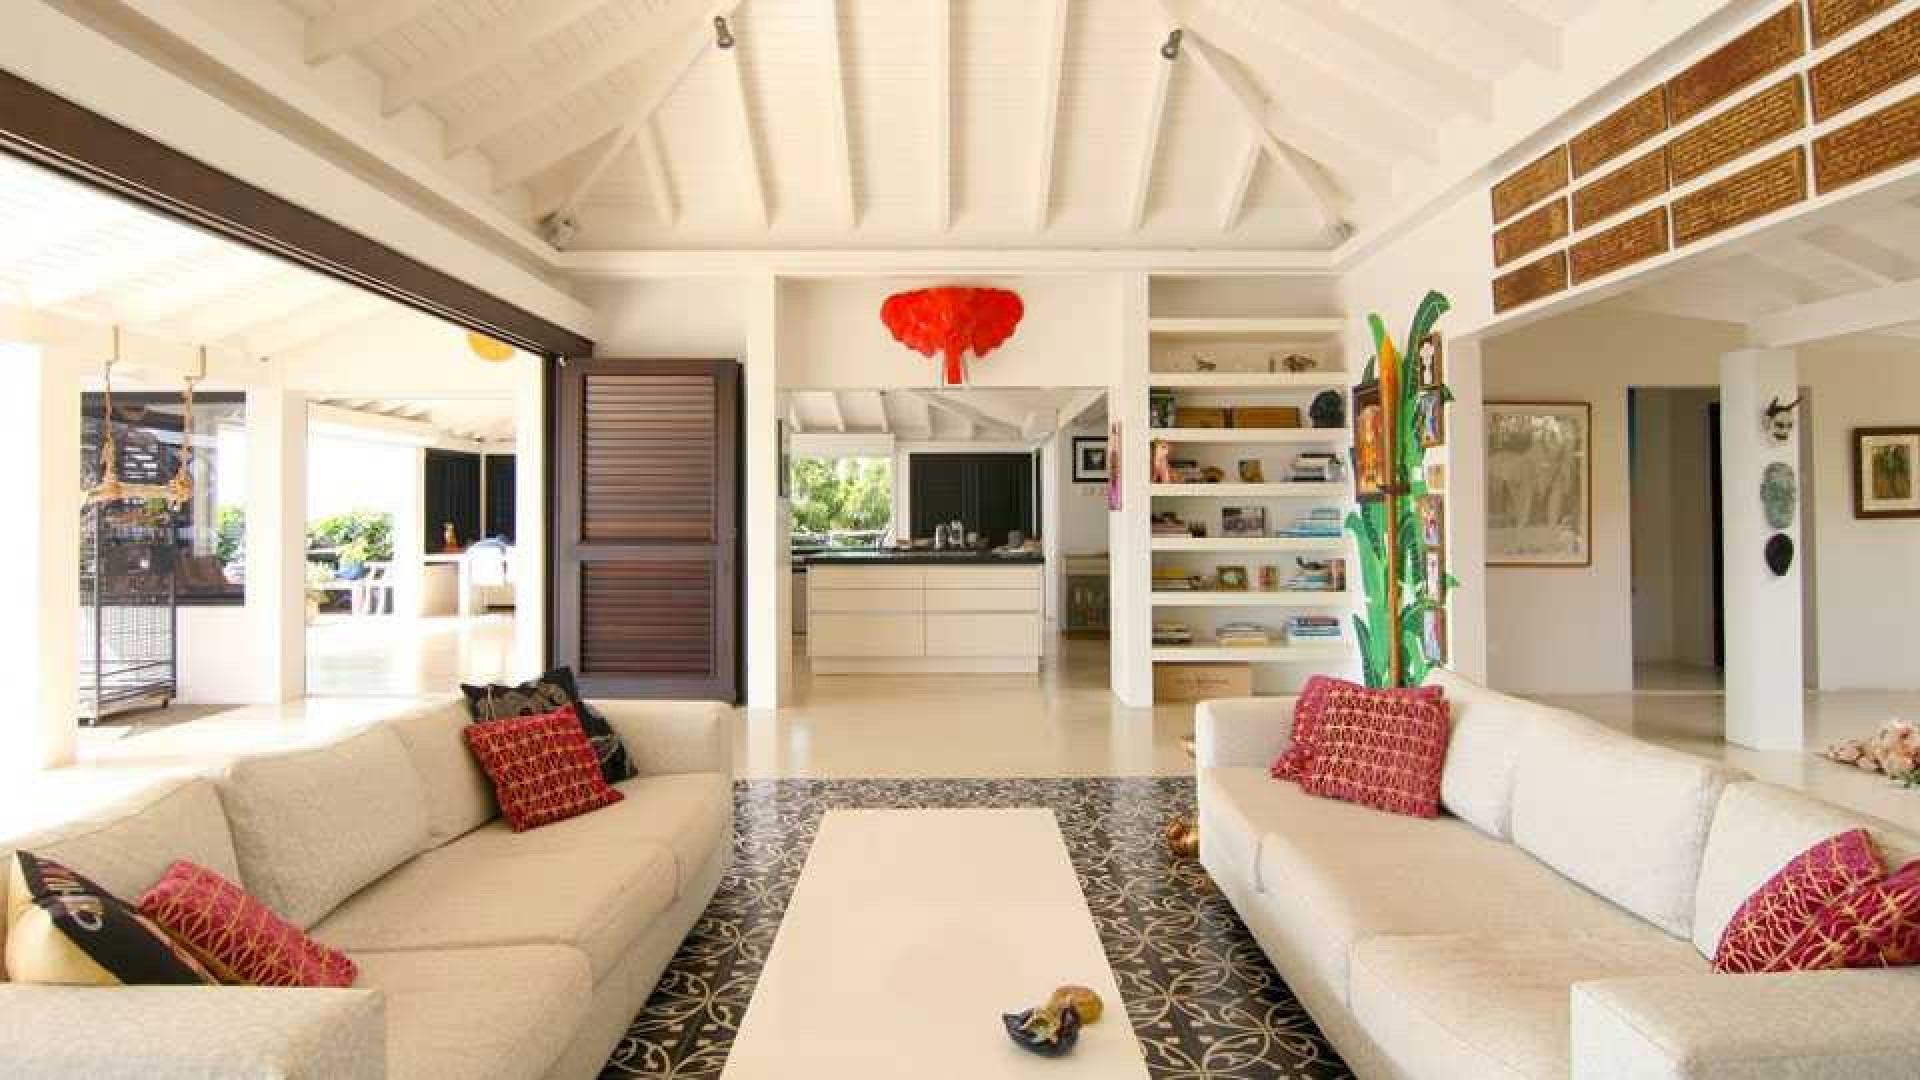 Barry Hay verlaagt vraagprijs van zijn miljoenen villa op Curacao. Zie foto's